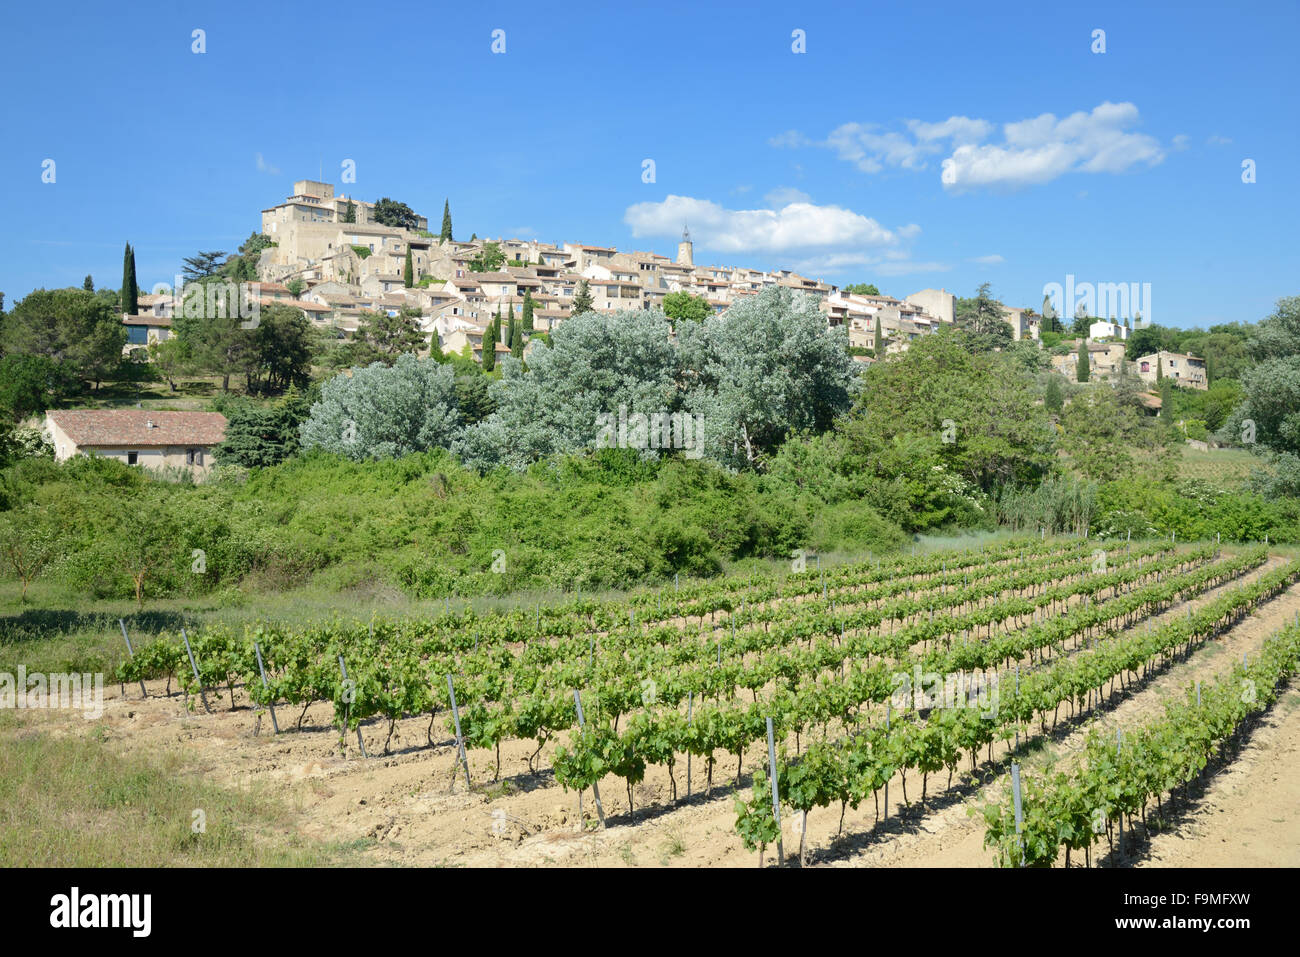 Vignobles ci-dessous le village perché d'Ansouis dans le Luberon Vaucluse provence france Banque D'Images